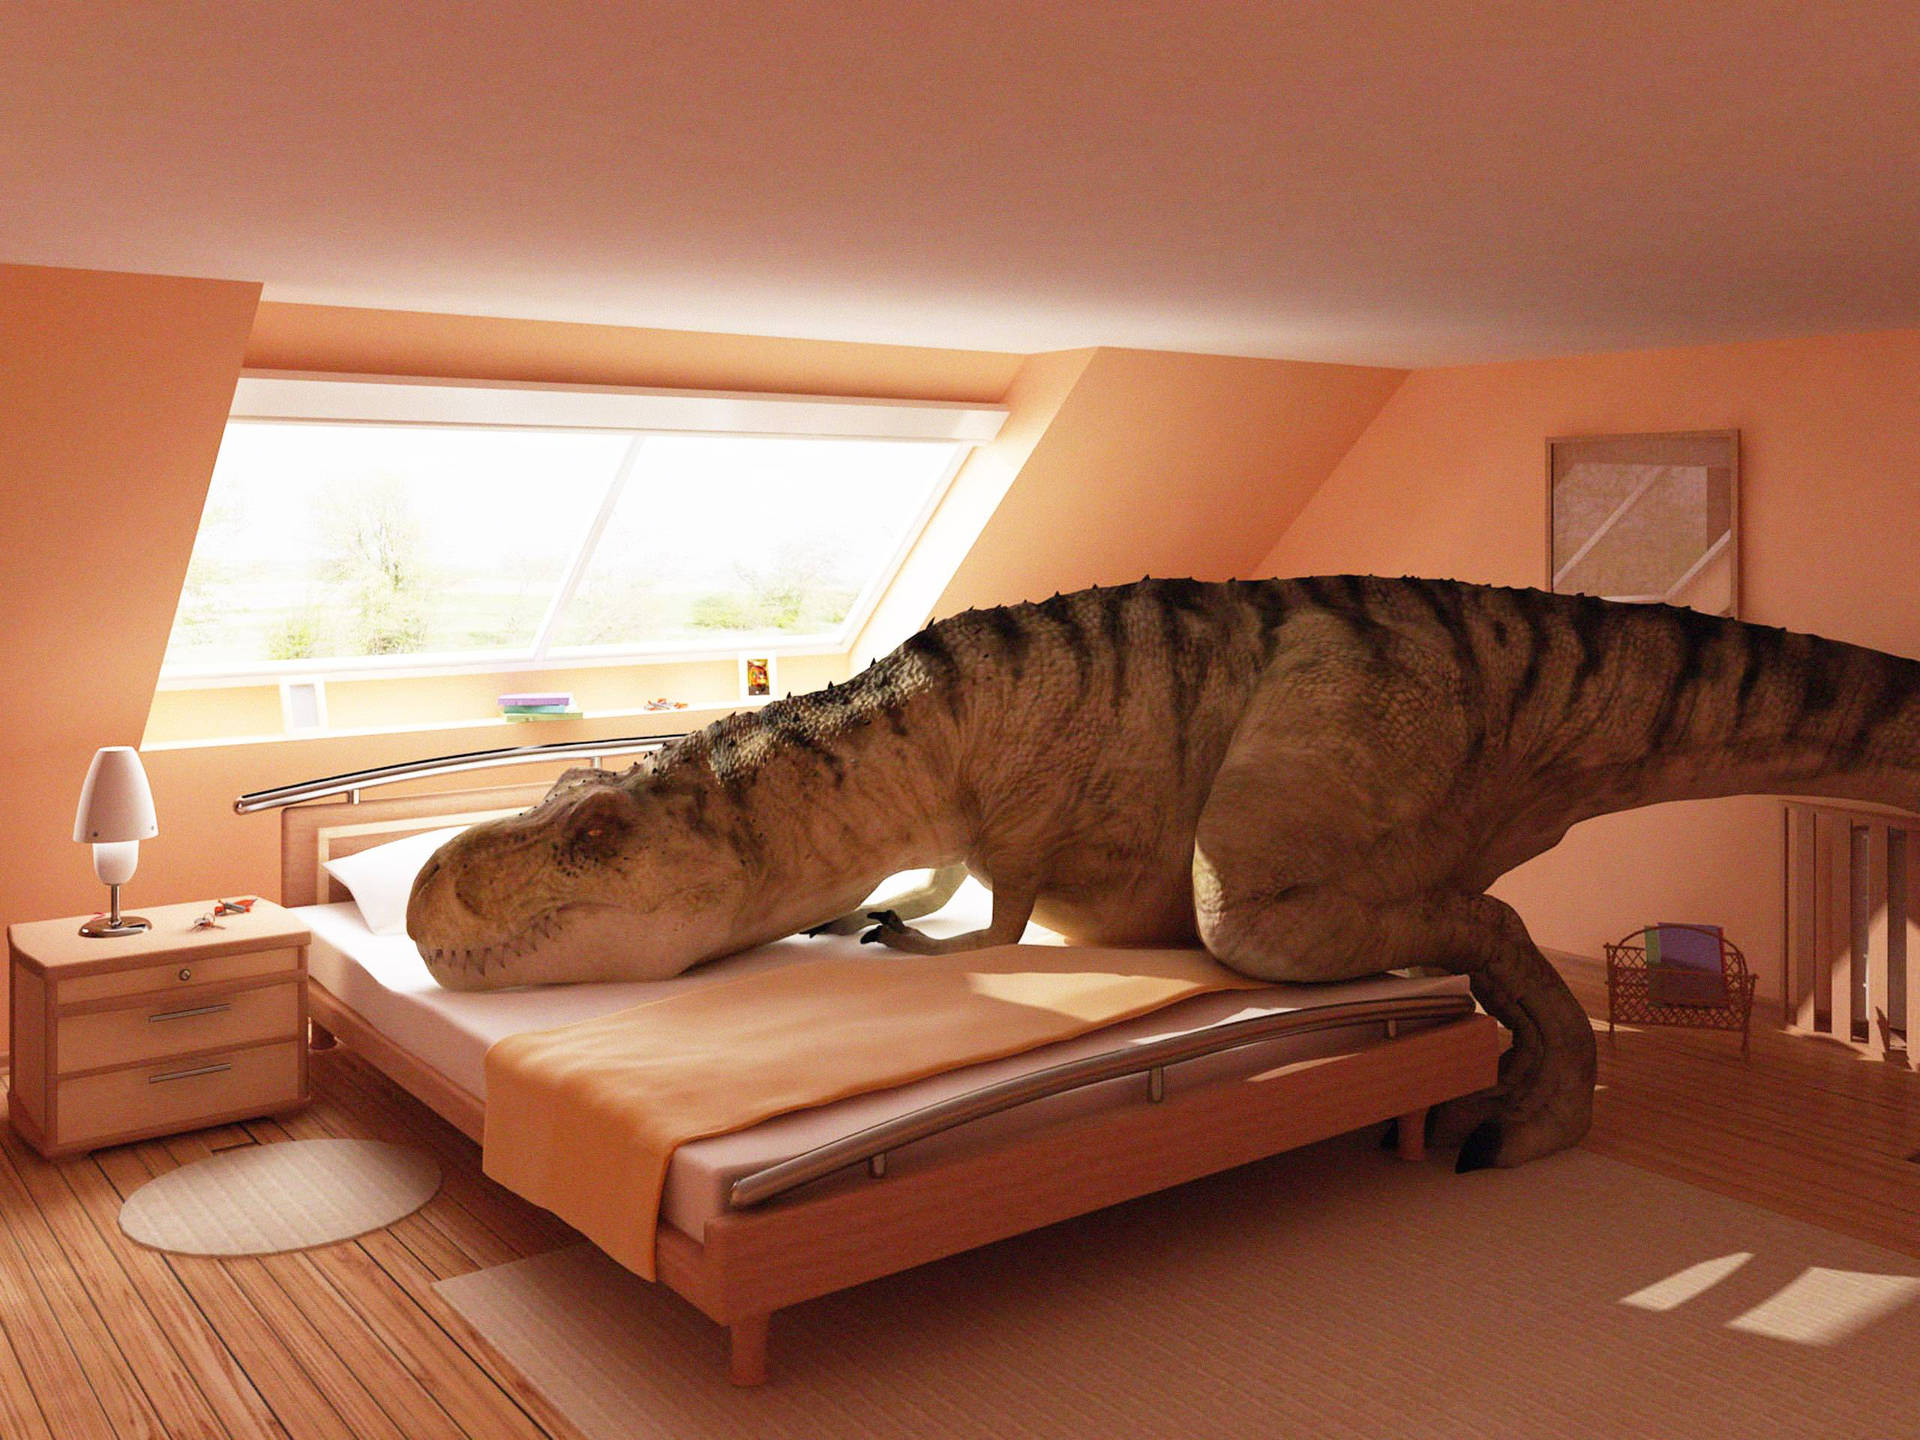 Weird Dinosaur On Bed Wallpaper